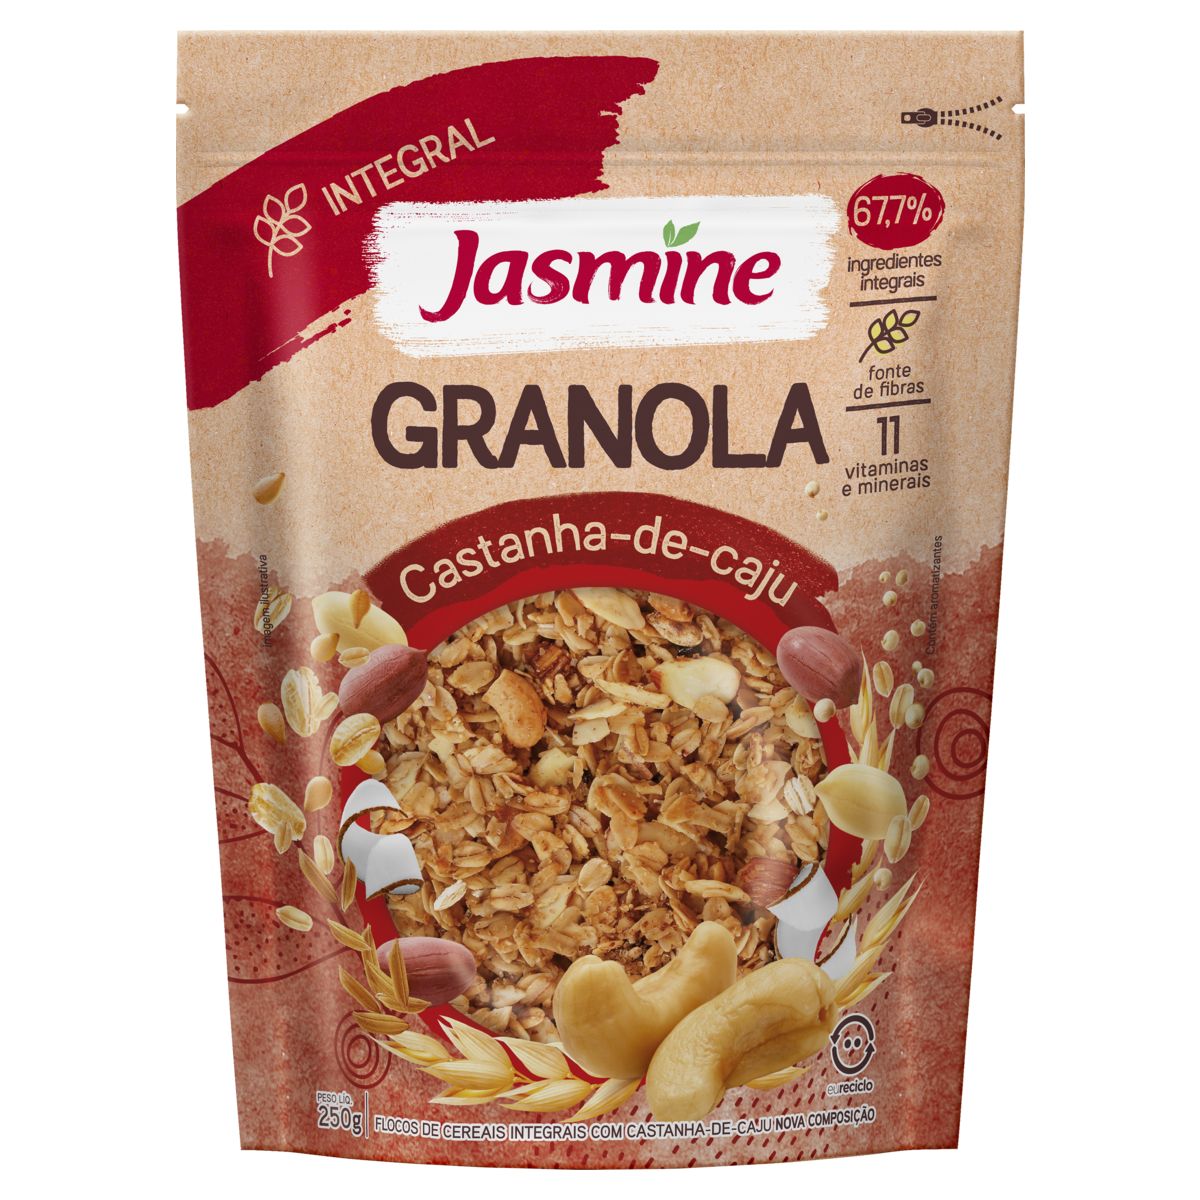 Granola Jasmine 67,7% Integral Castanha-de-Caju Pouch 250g